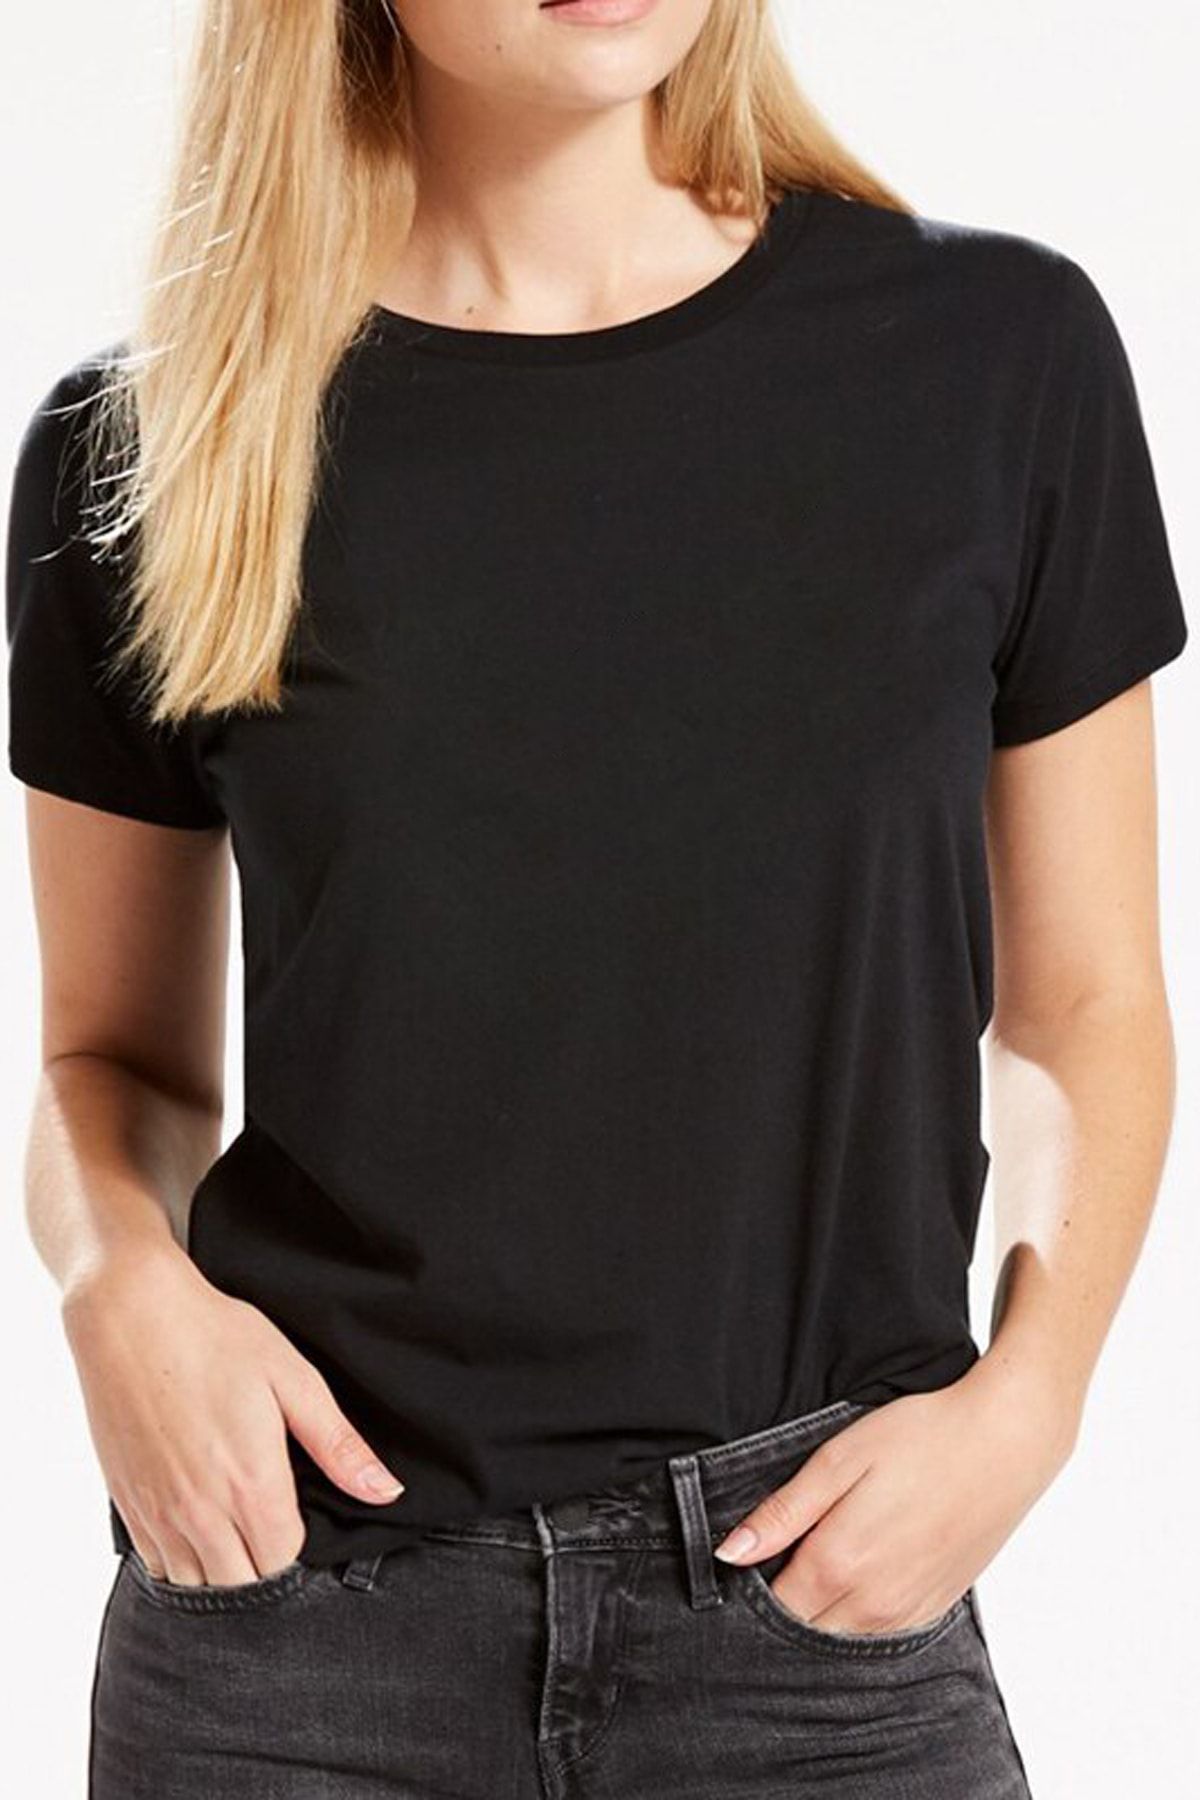 QIVI Baskısız Düz Sade Siyah Kadın Örme Tshirt T-shirt Tişört T Shirt